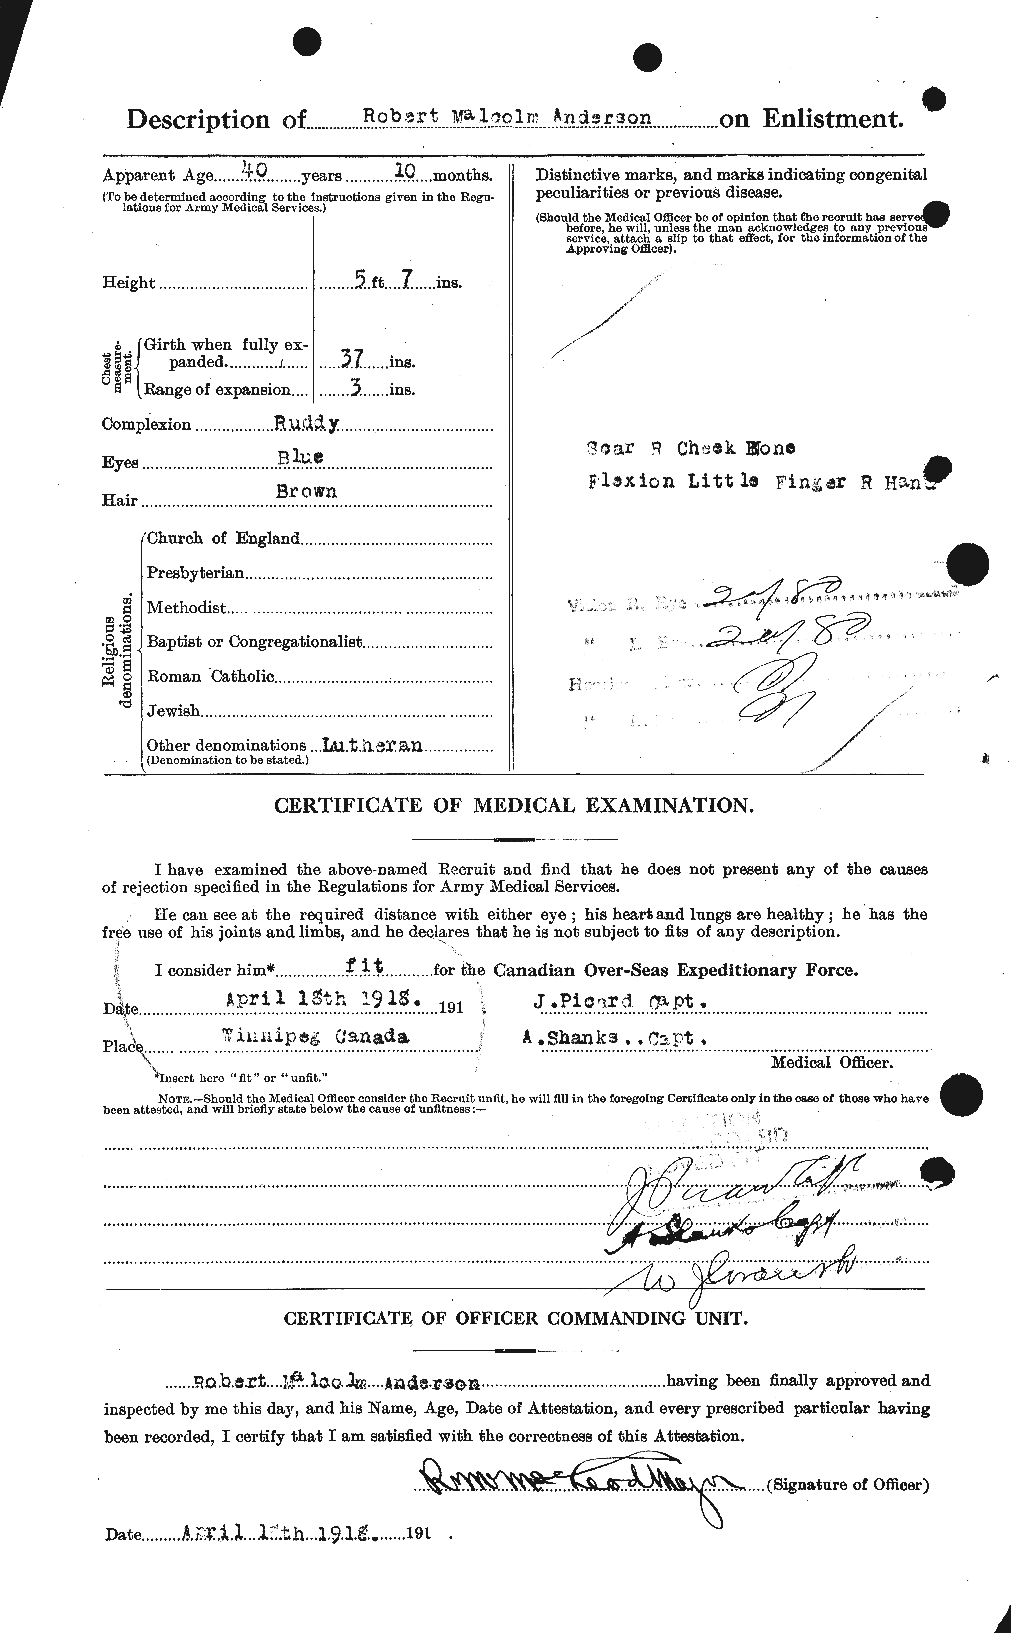 Dossiers du Personnel de la Première Guerre mondiale - CEC 207234b